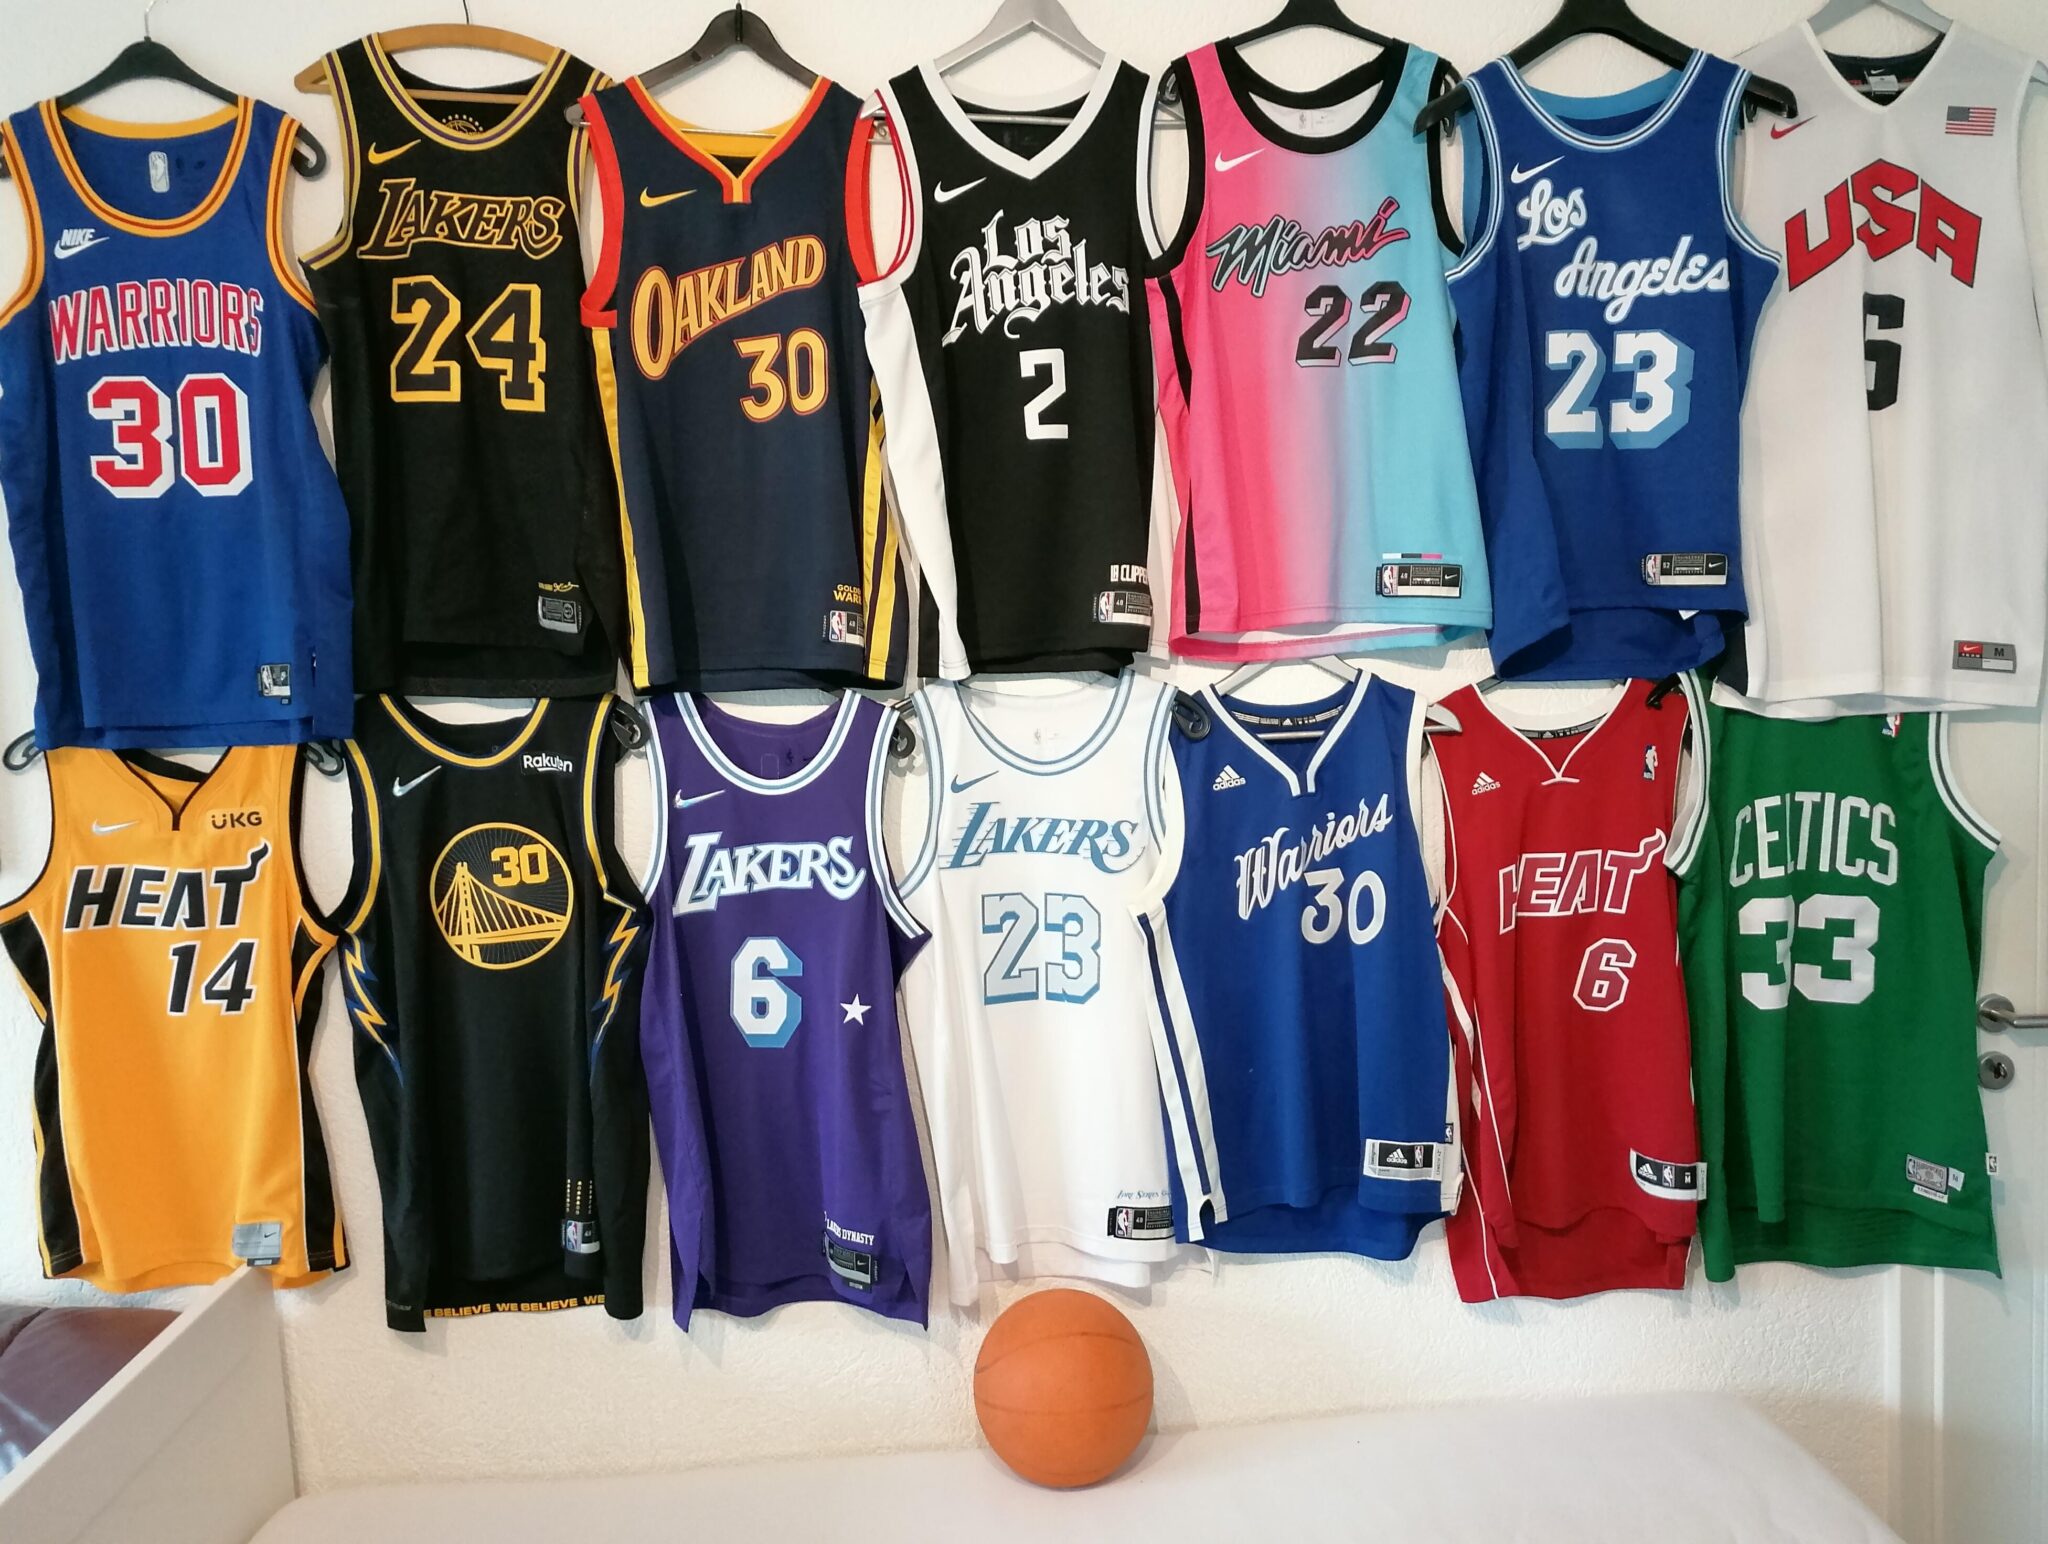 Depuis quand le nom des joueurs apparaît-il sur les maillots NBA ?